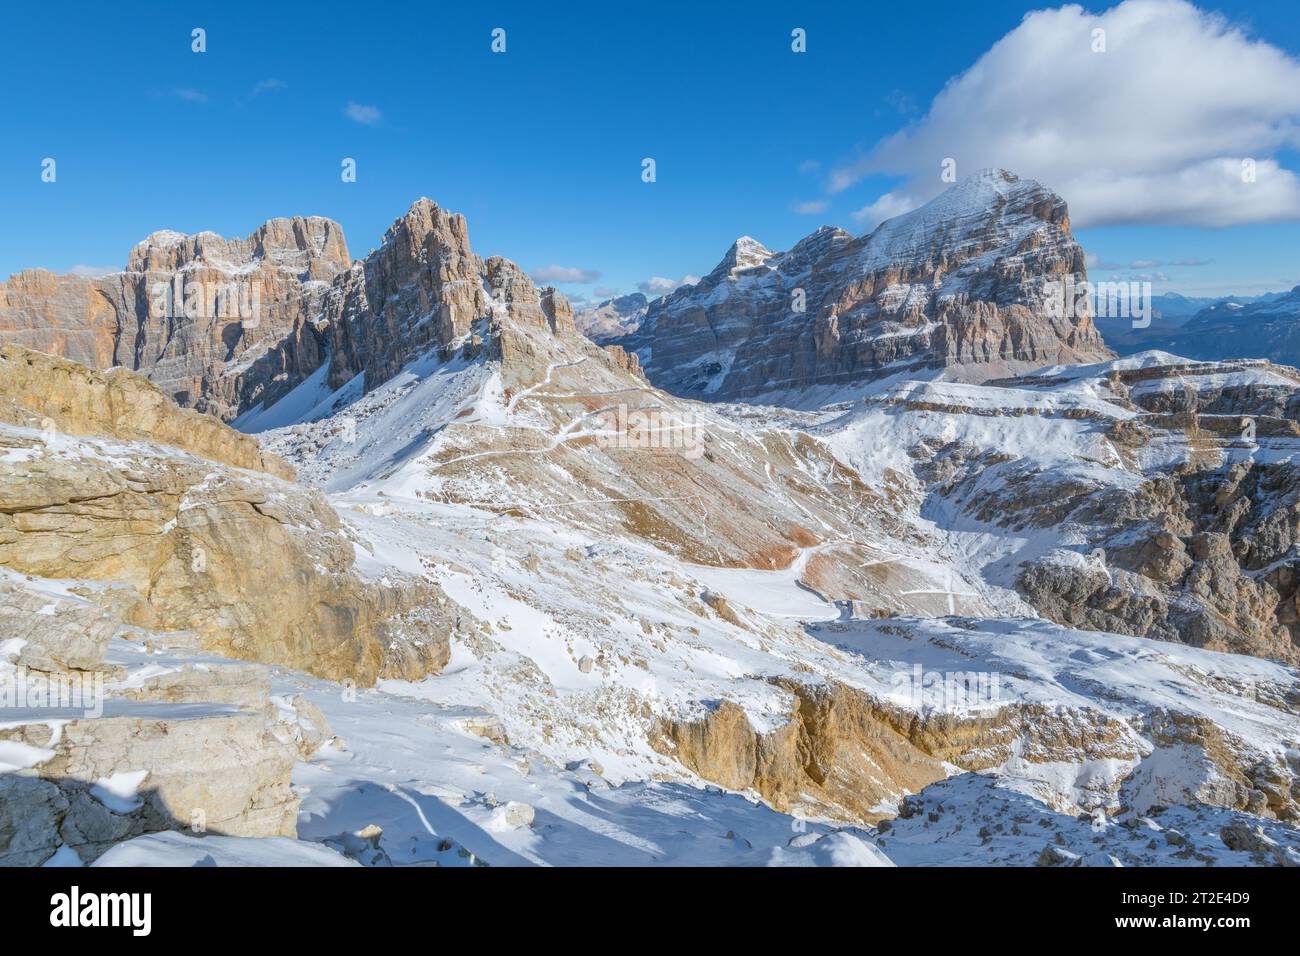 Panoramablick vom Gipfel des Lagazuoi in den italienischen Dolomiten. Schneebedeckte Berglandschaft mit Blick auf die Tofane-Berge. Stockfoto